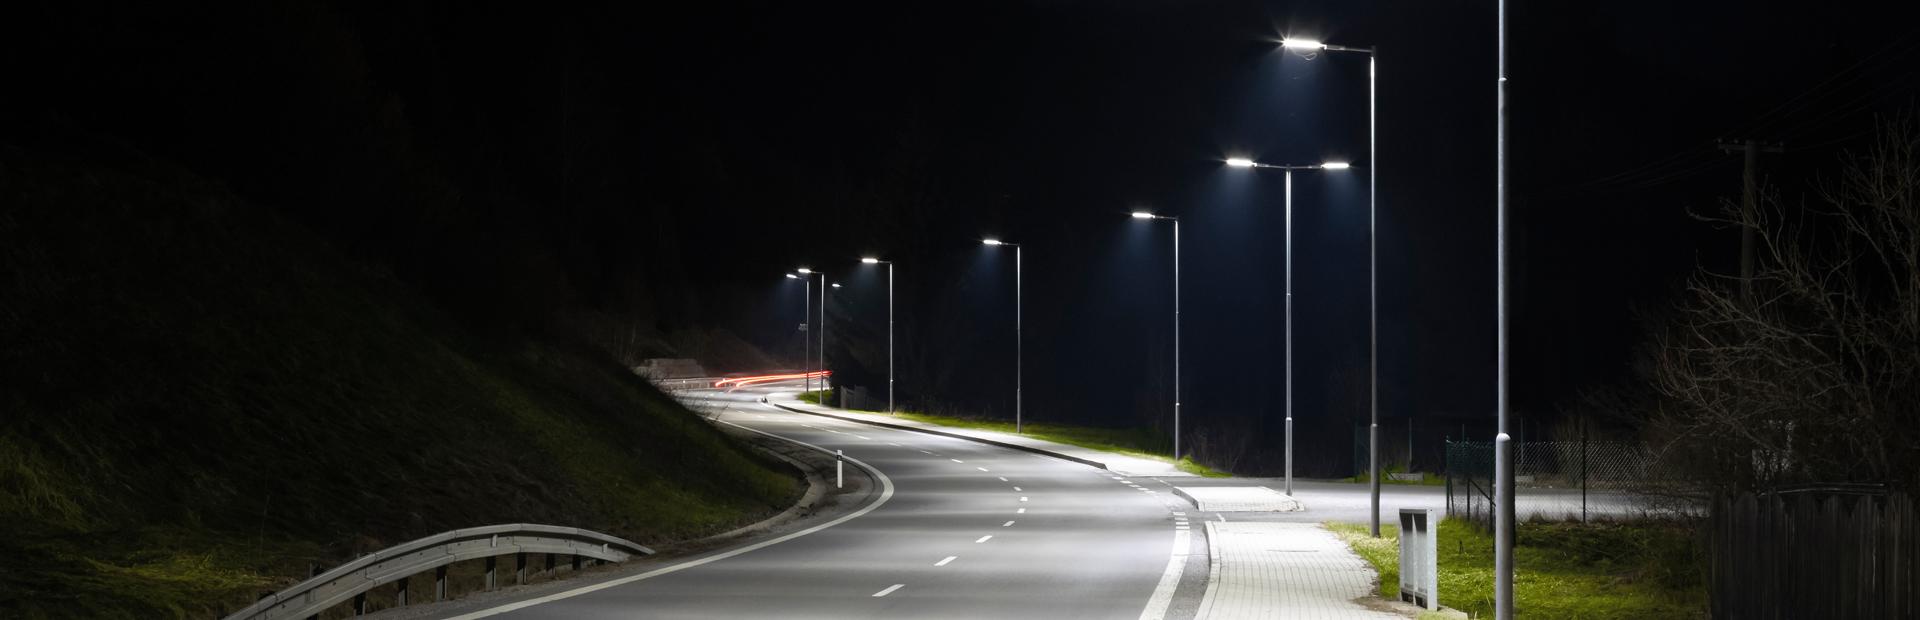 #2 Oświetlenie drogowe w nocy